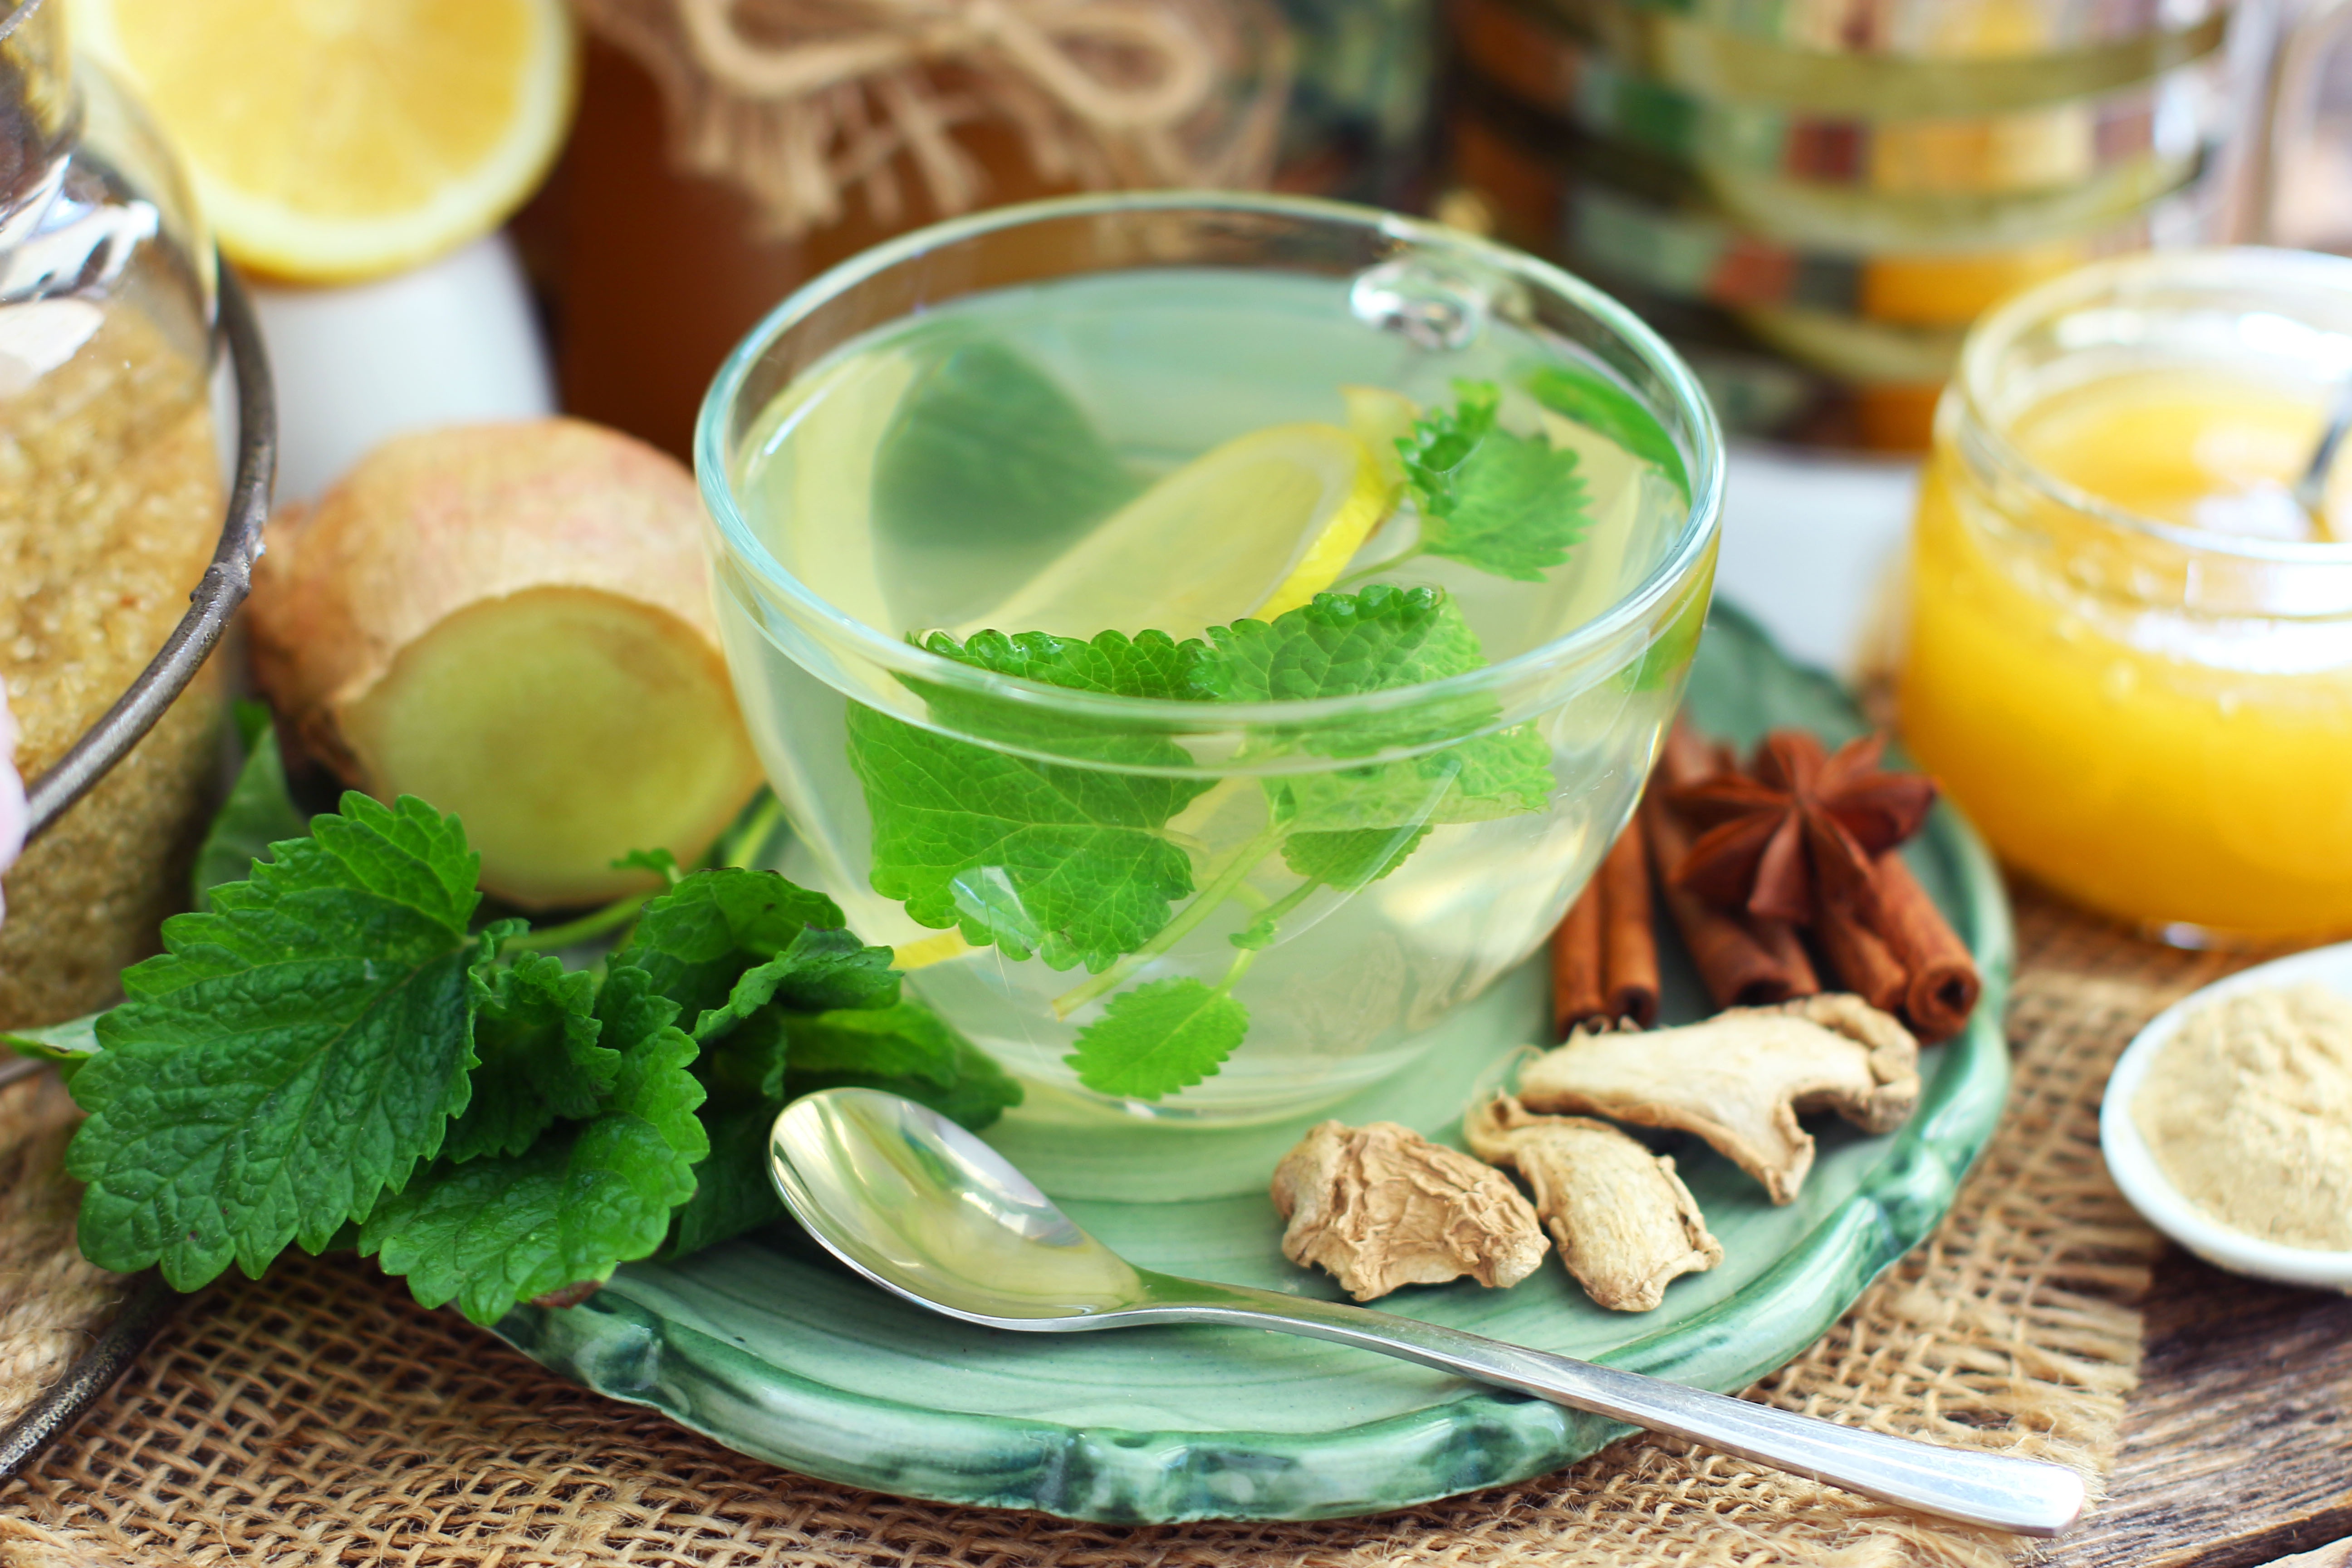 Зеленый чай лимон и мята